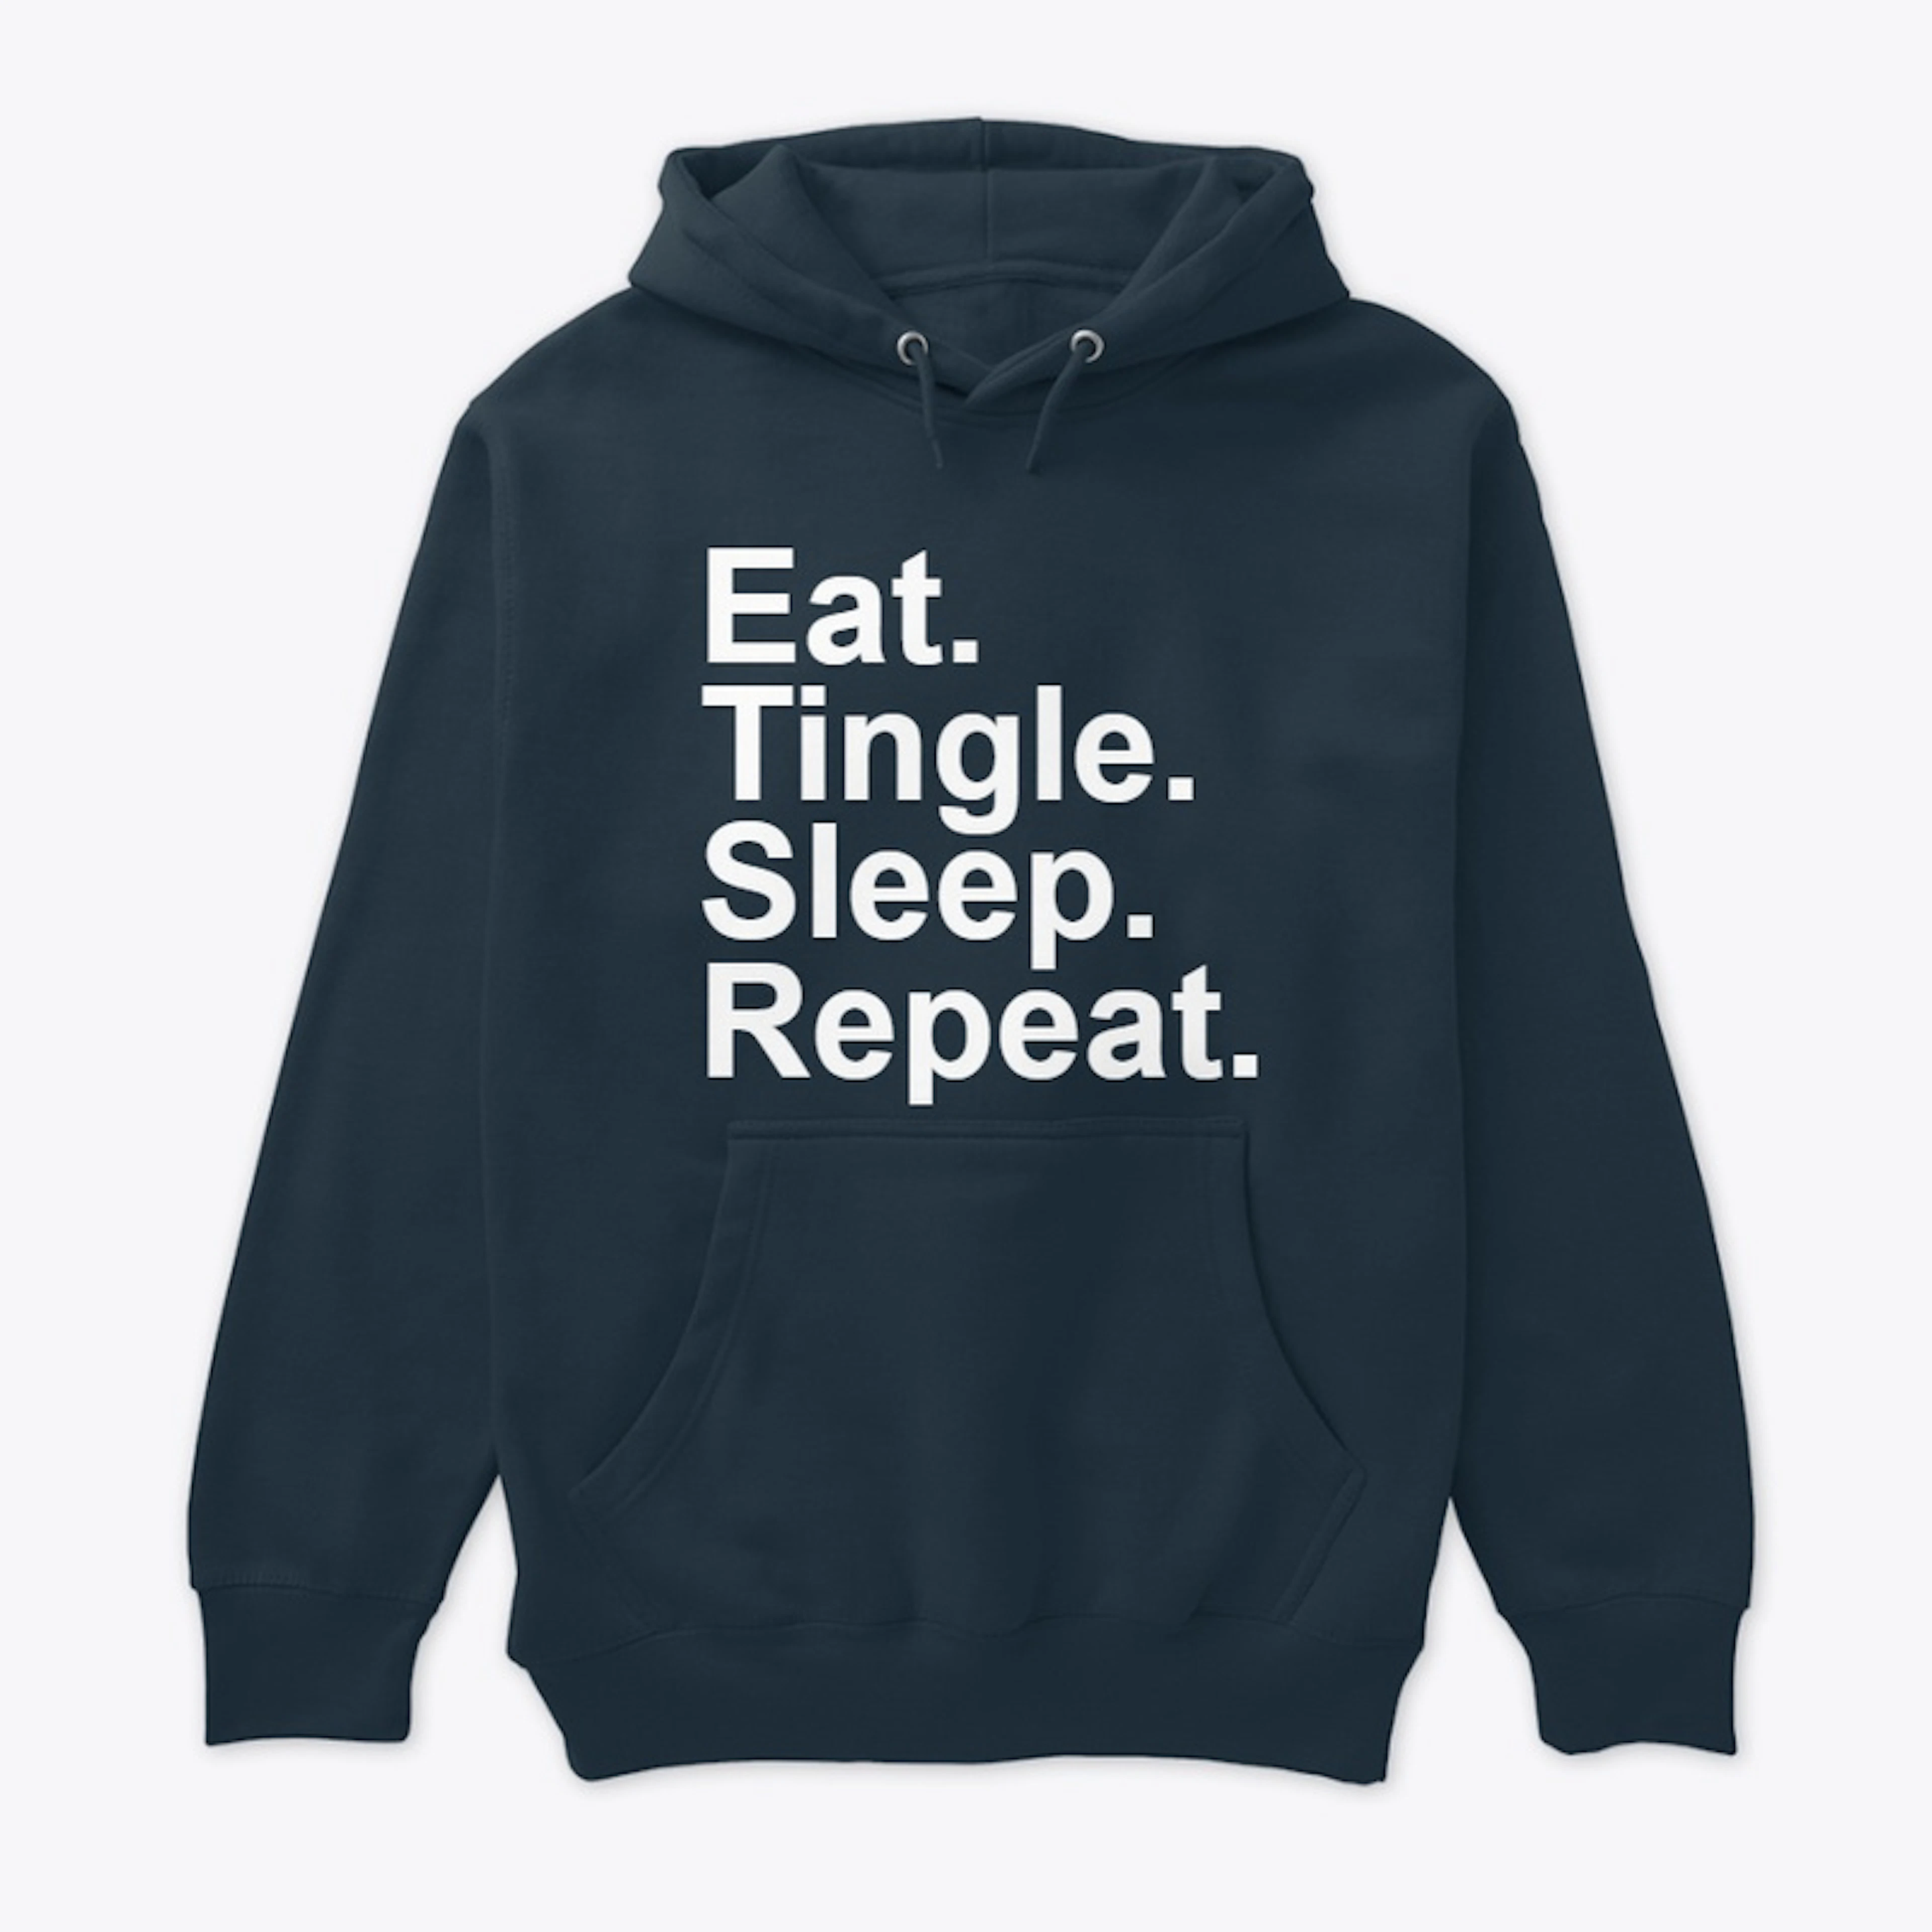 Eat. Tingle. Sleep. Repeat. (Dark)